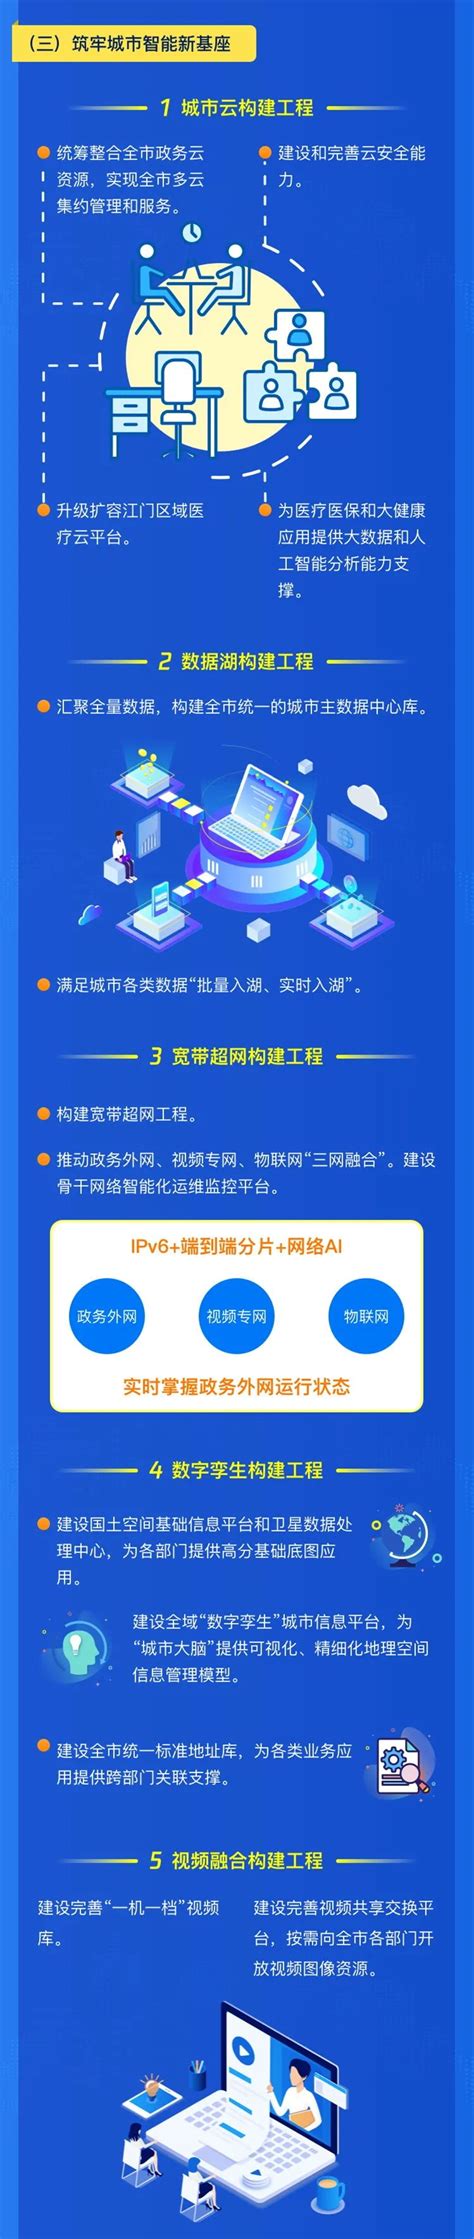 江门市新型智慧城市建设行动方案（2021-2023年）_亿信华辰-大数据分析、数据治理、商业智能BI工具与服务提供商